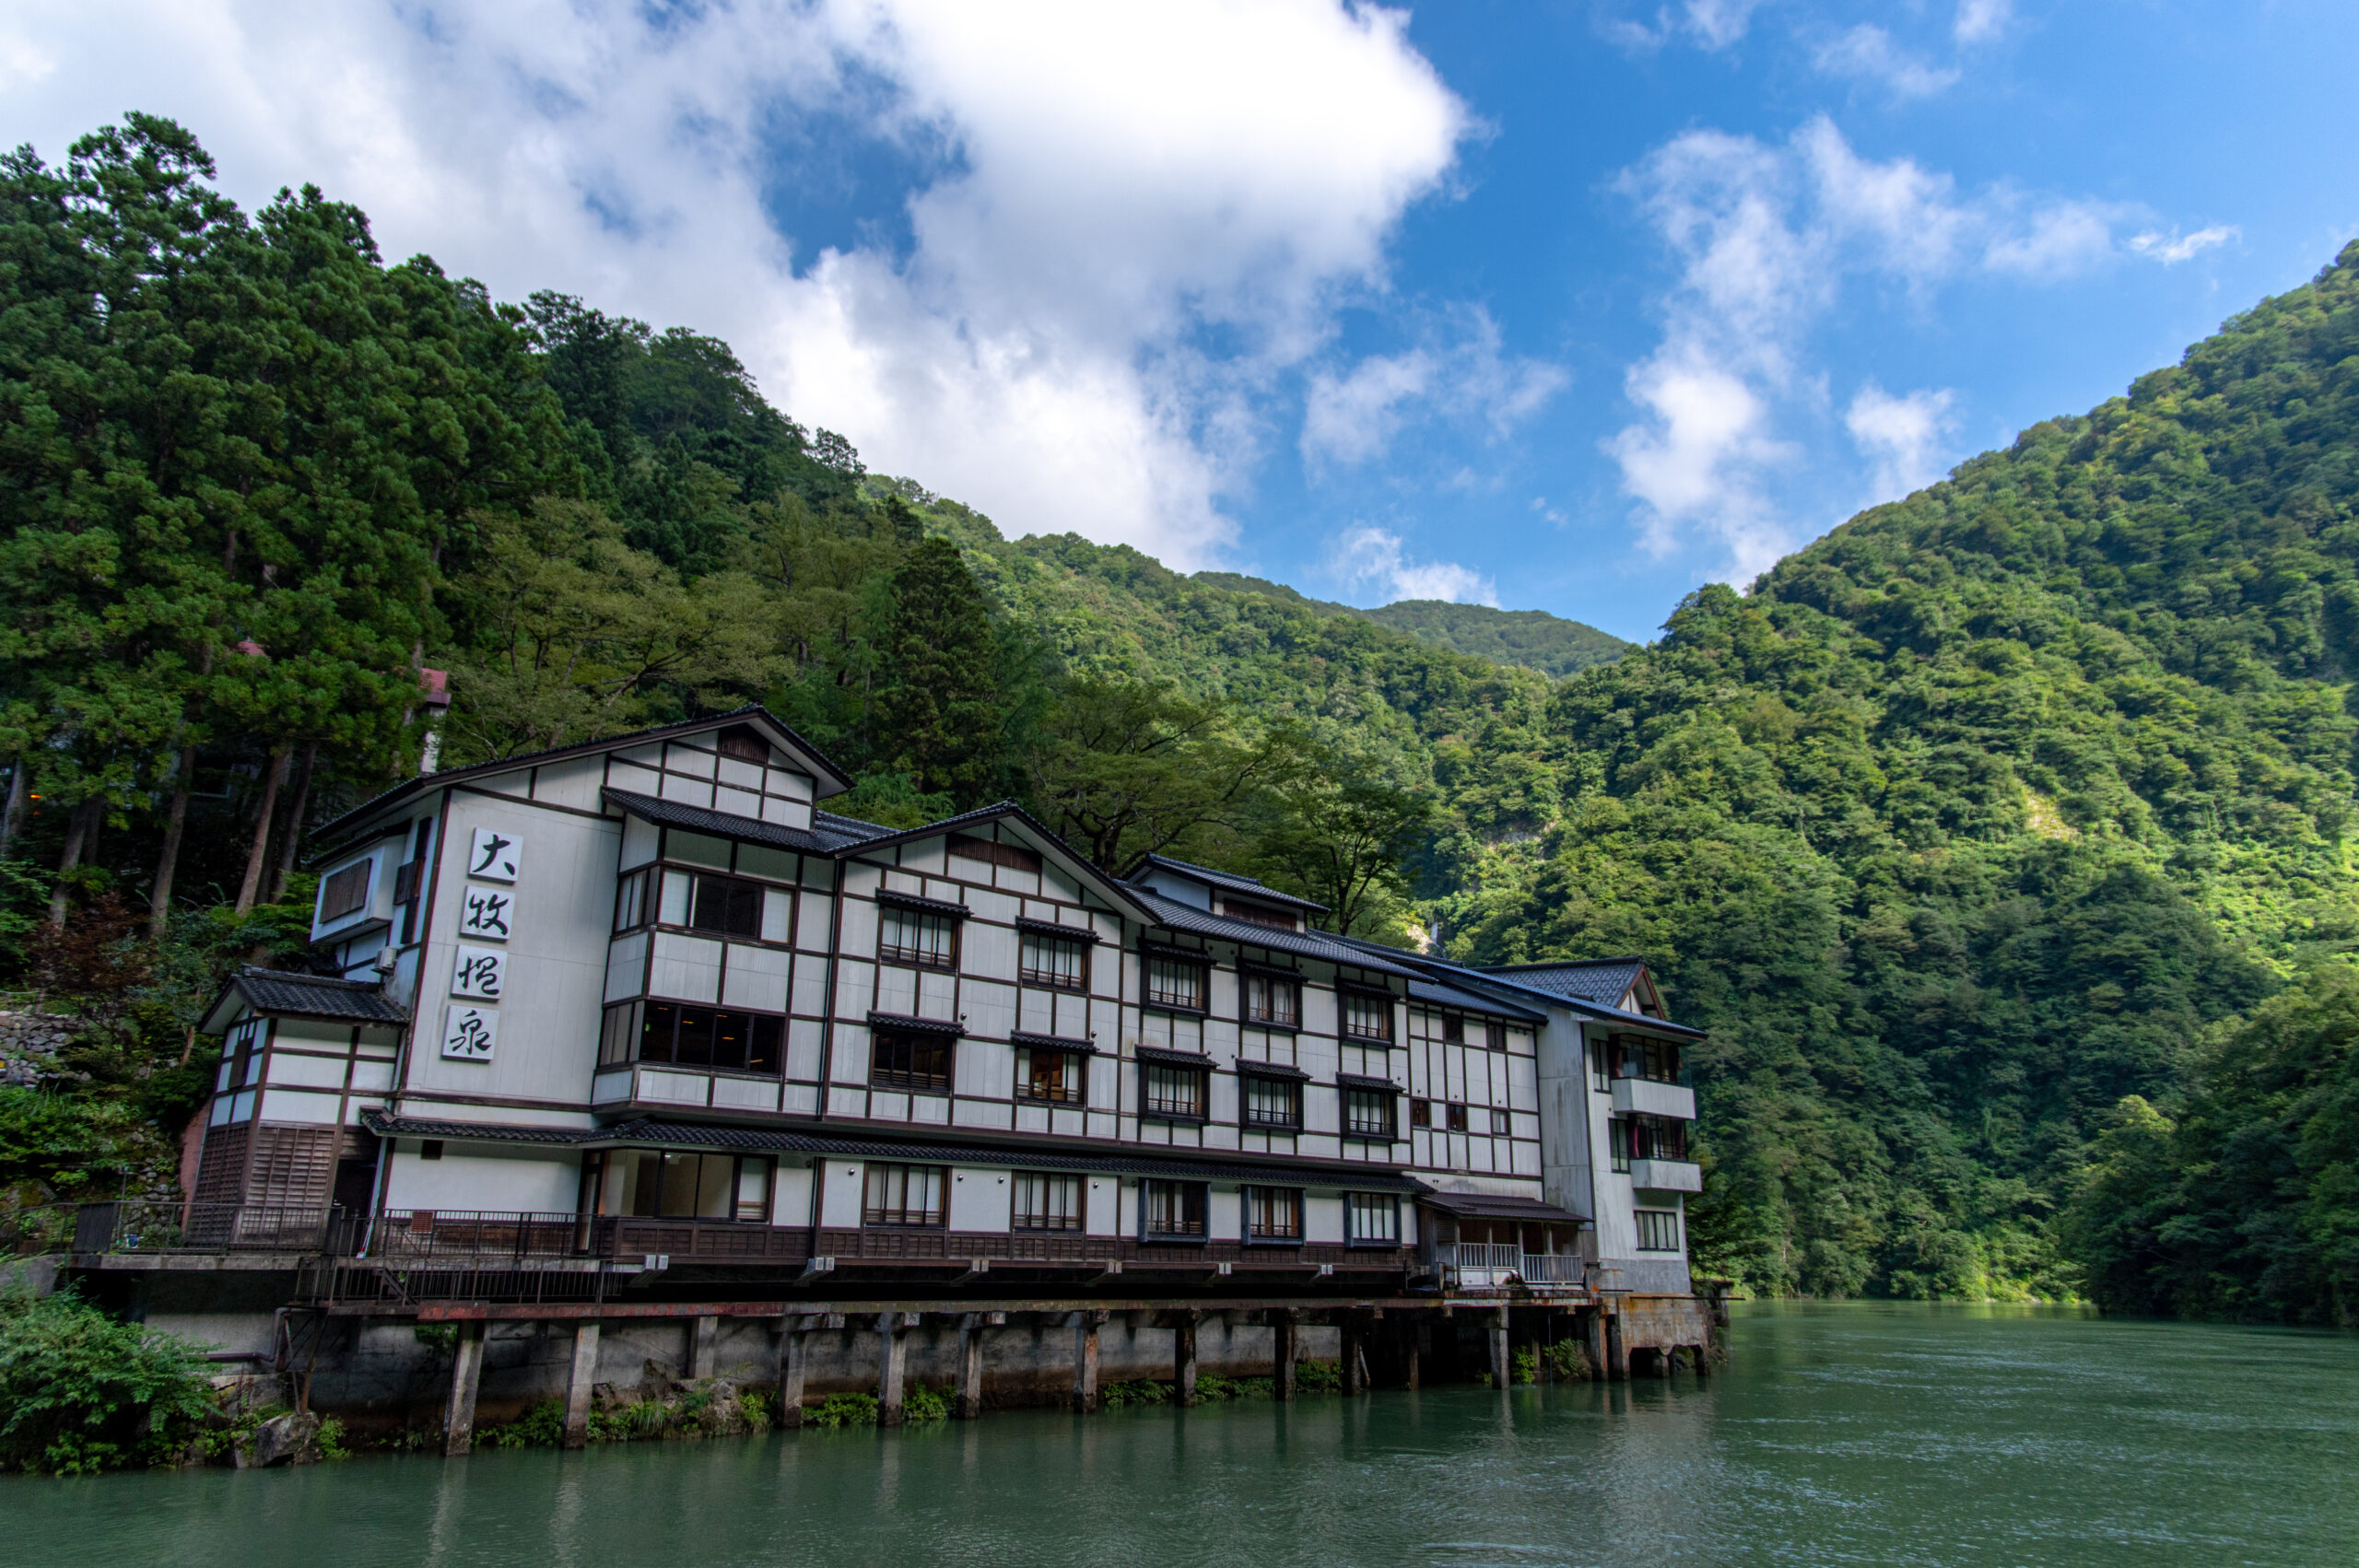 船でしか行けない温泉地までバス一本。富山県の大牧温泉まで、バスを使った行き方。